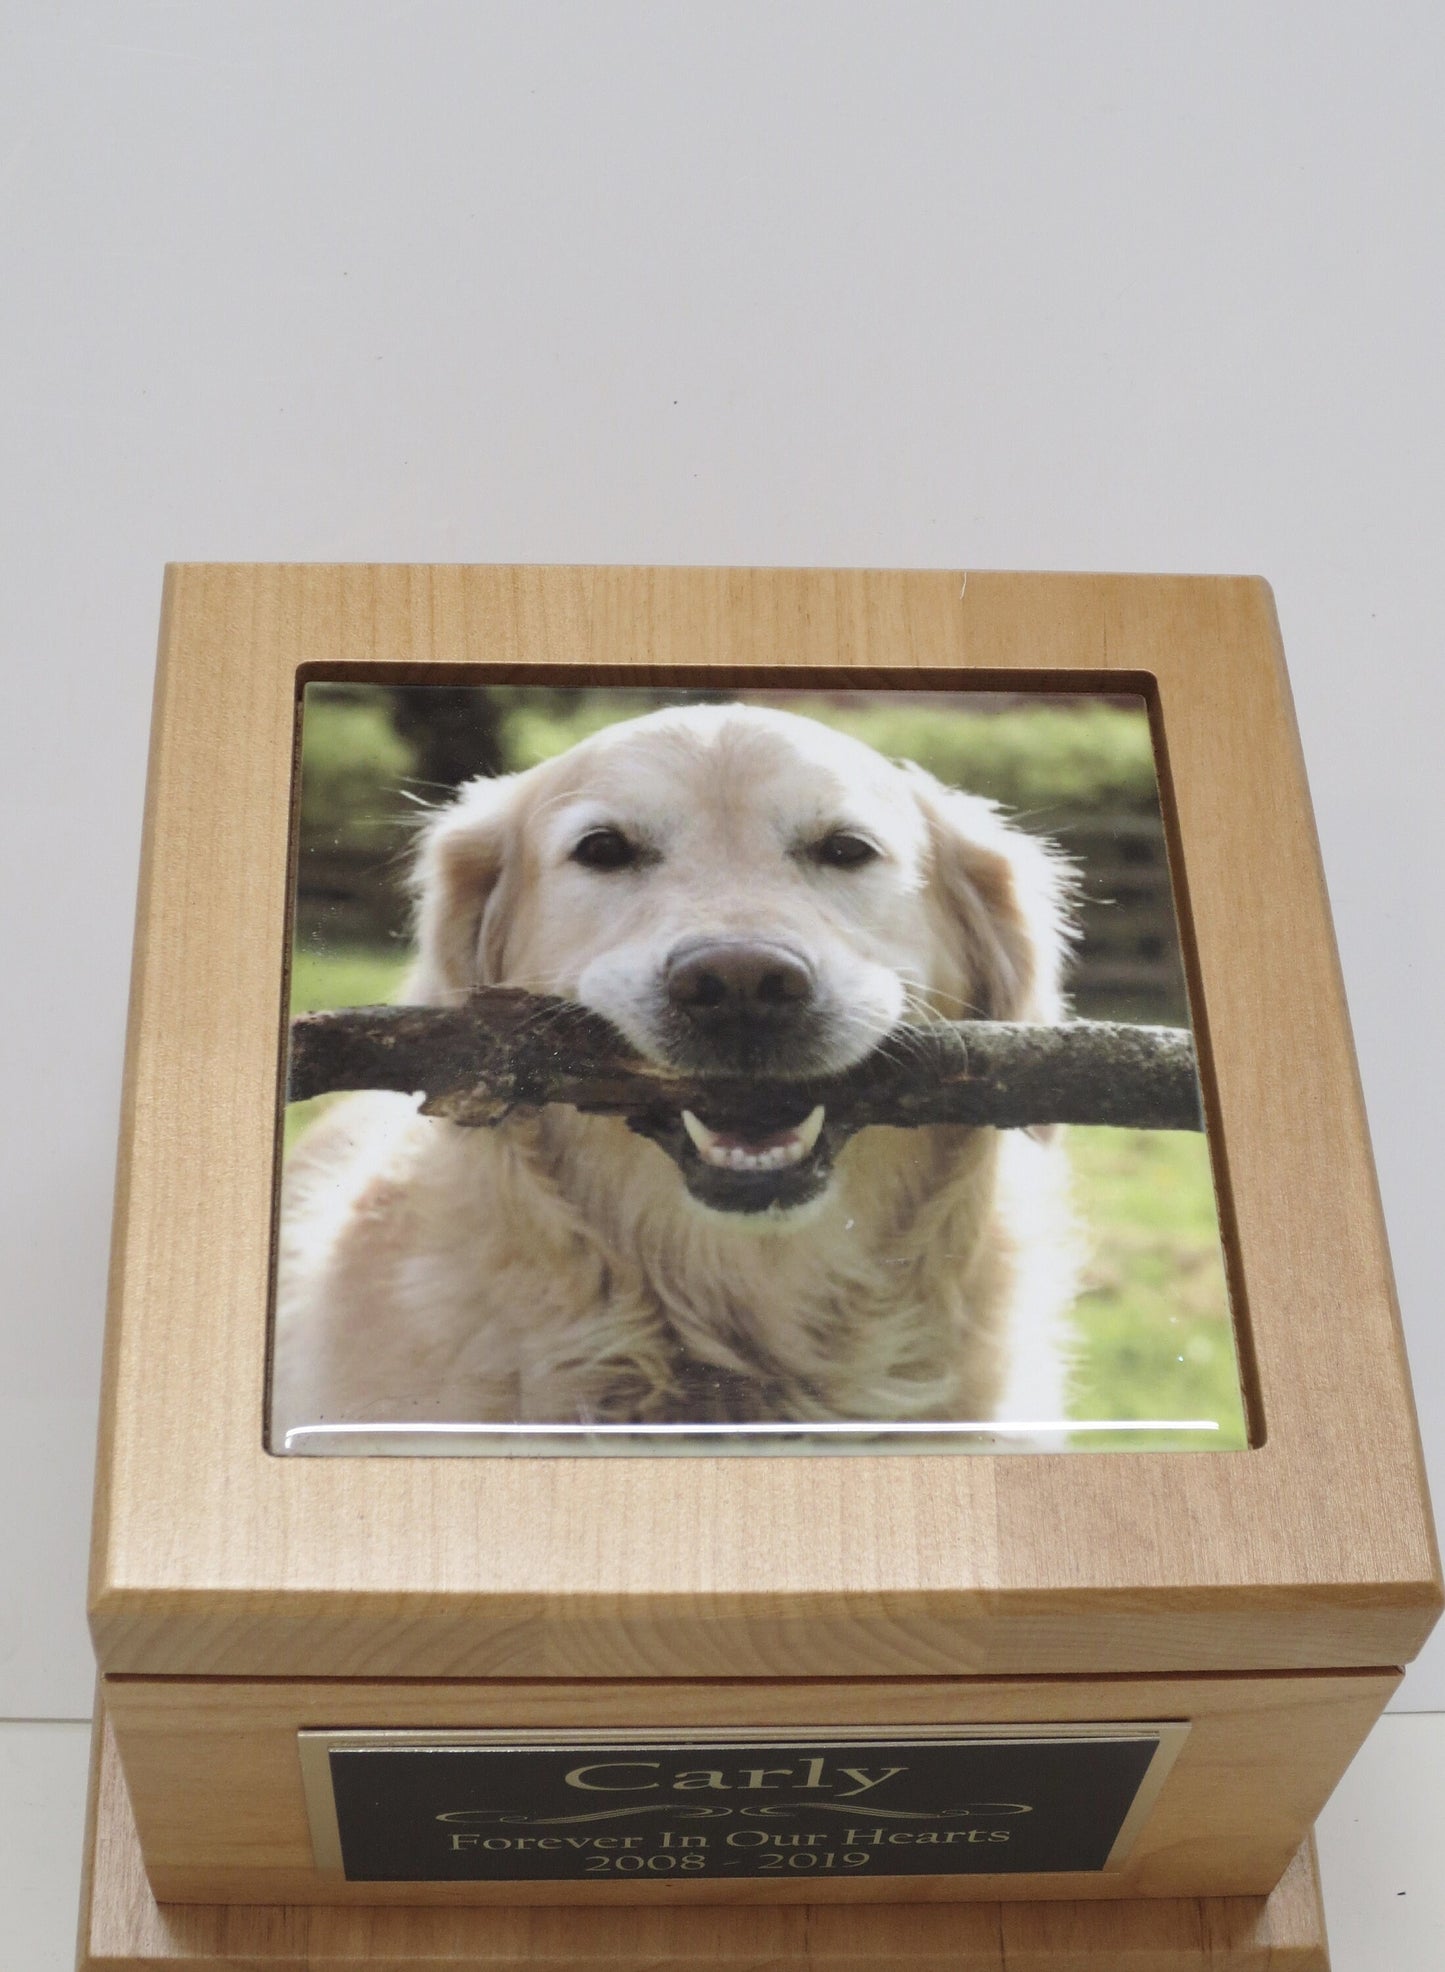 Dog Urn Pet Urn Pet Memorial Keepsake Cremation Urn Custom Photo Tile & Personalized Brass Tag Red Alder Wood Medium Dog Urn UpTo 60lb